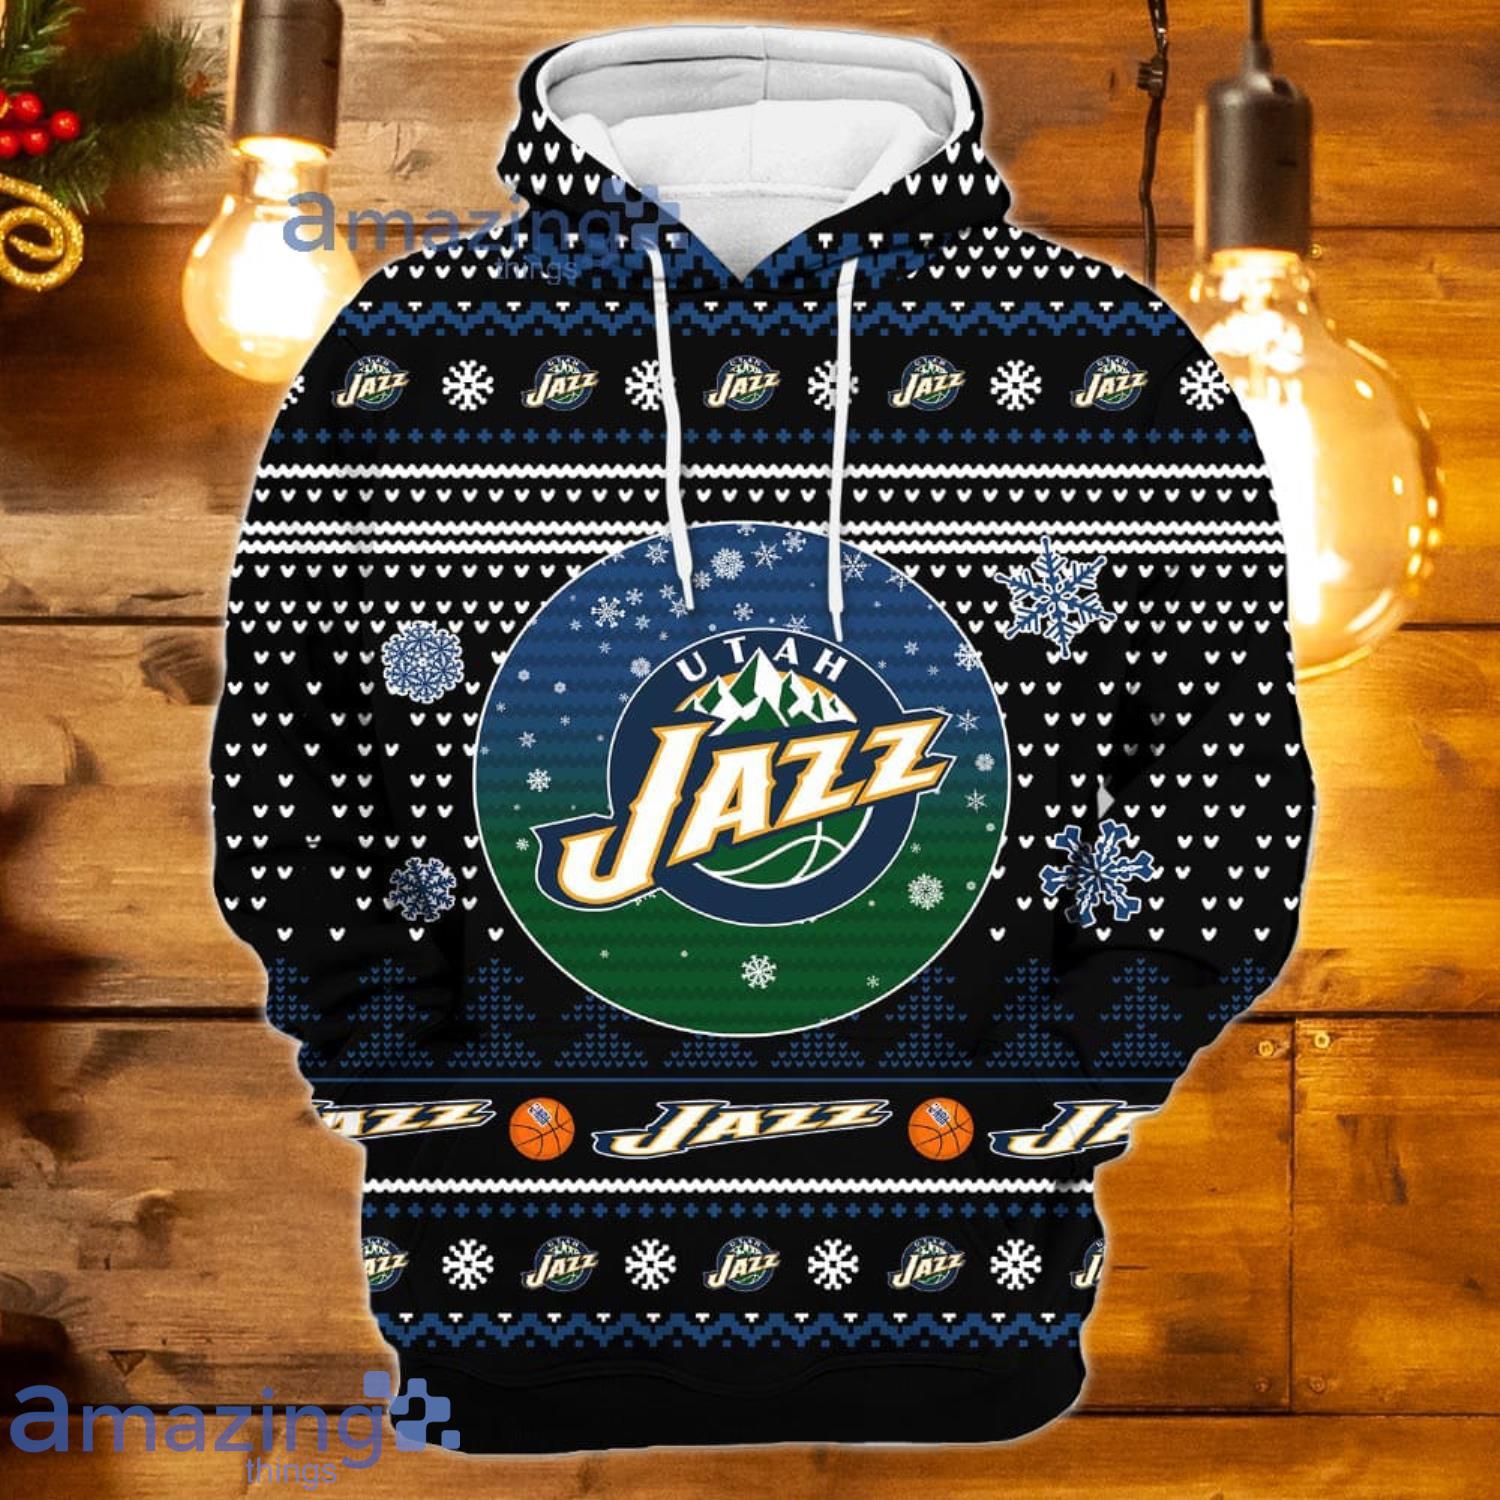 Nba all star 2023 utah jazz logo shirt, hoodie, longsleeve tee